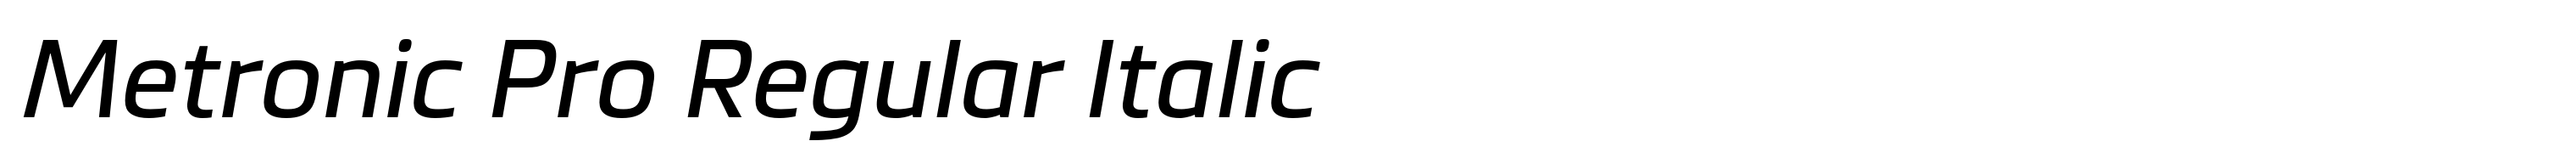 Metronic Pro Regular Italic